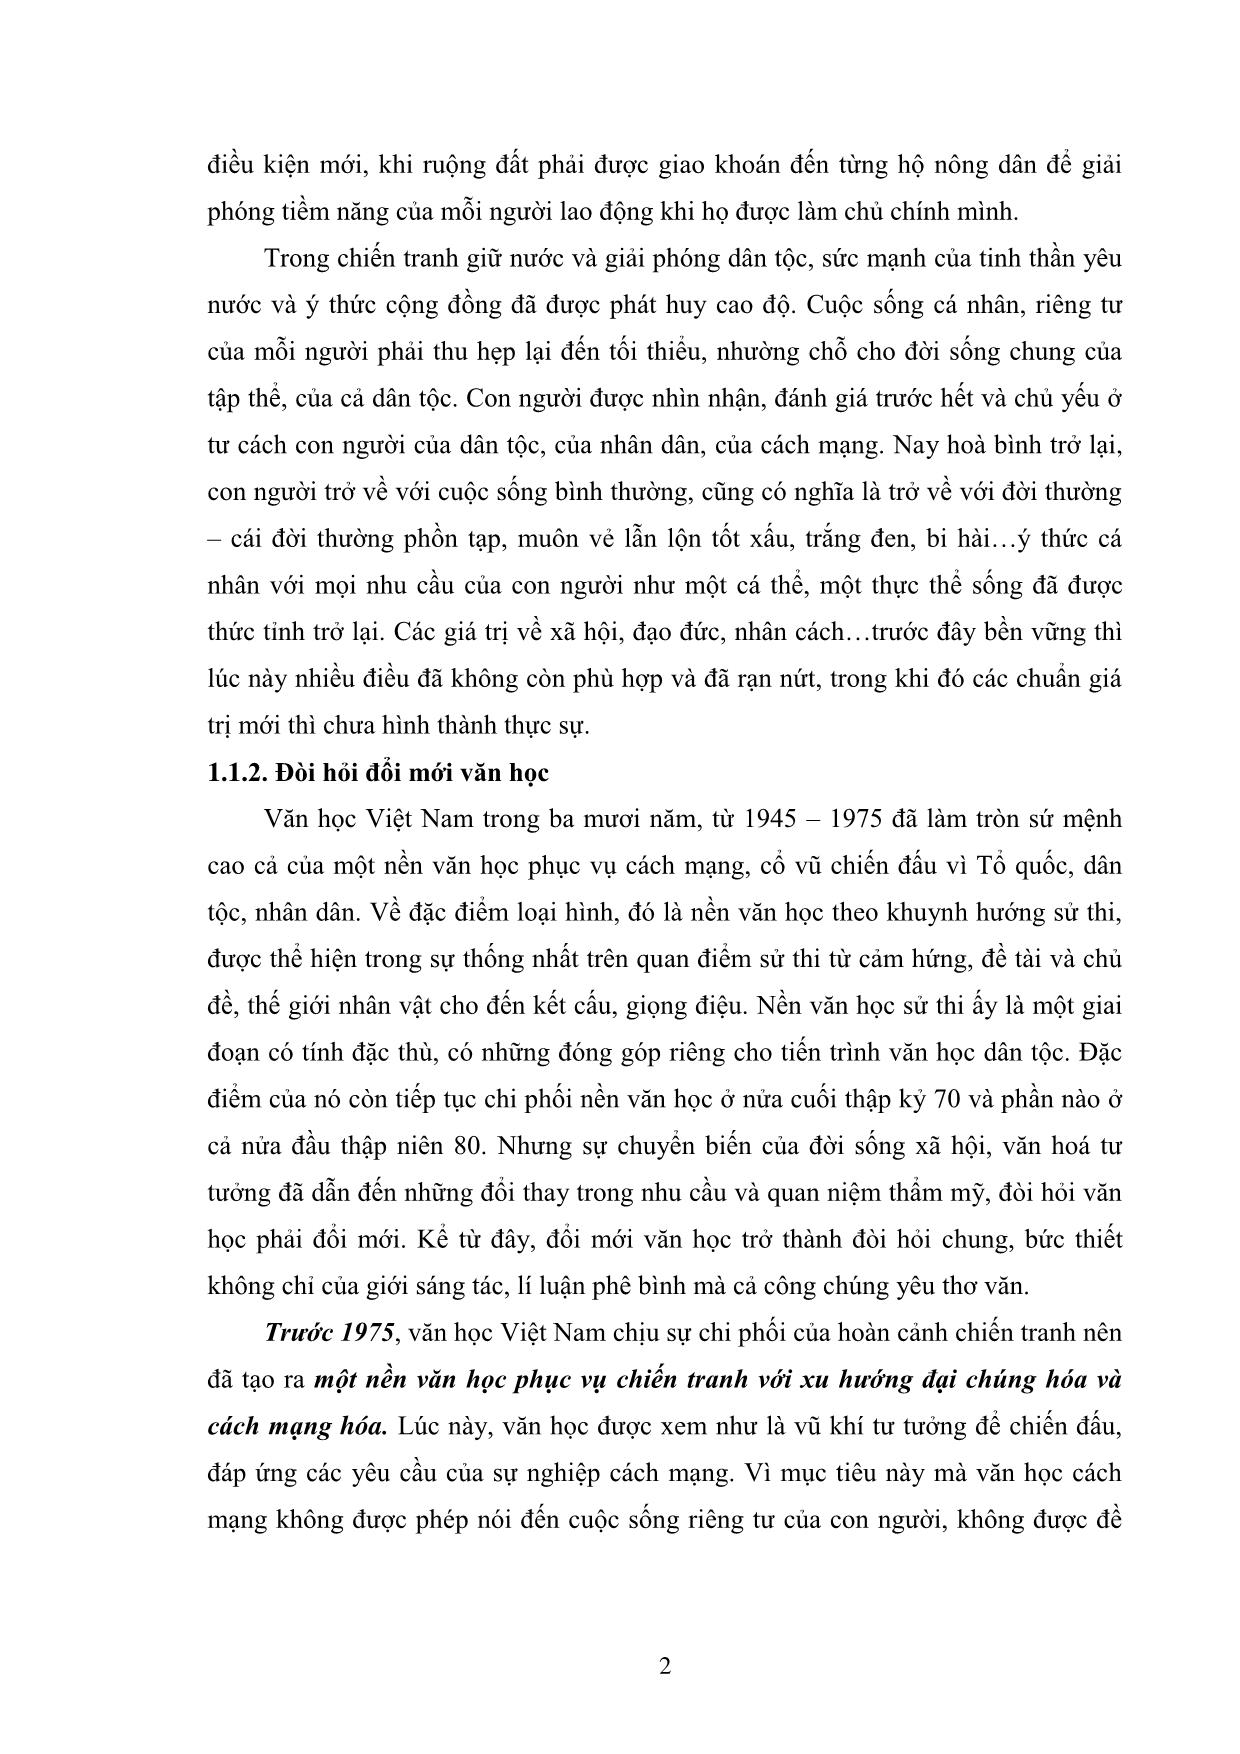 Giáo trình Văn học Việt Nam hiện đại 2B trang 5